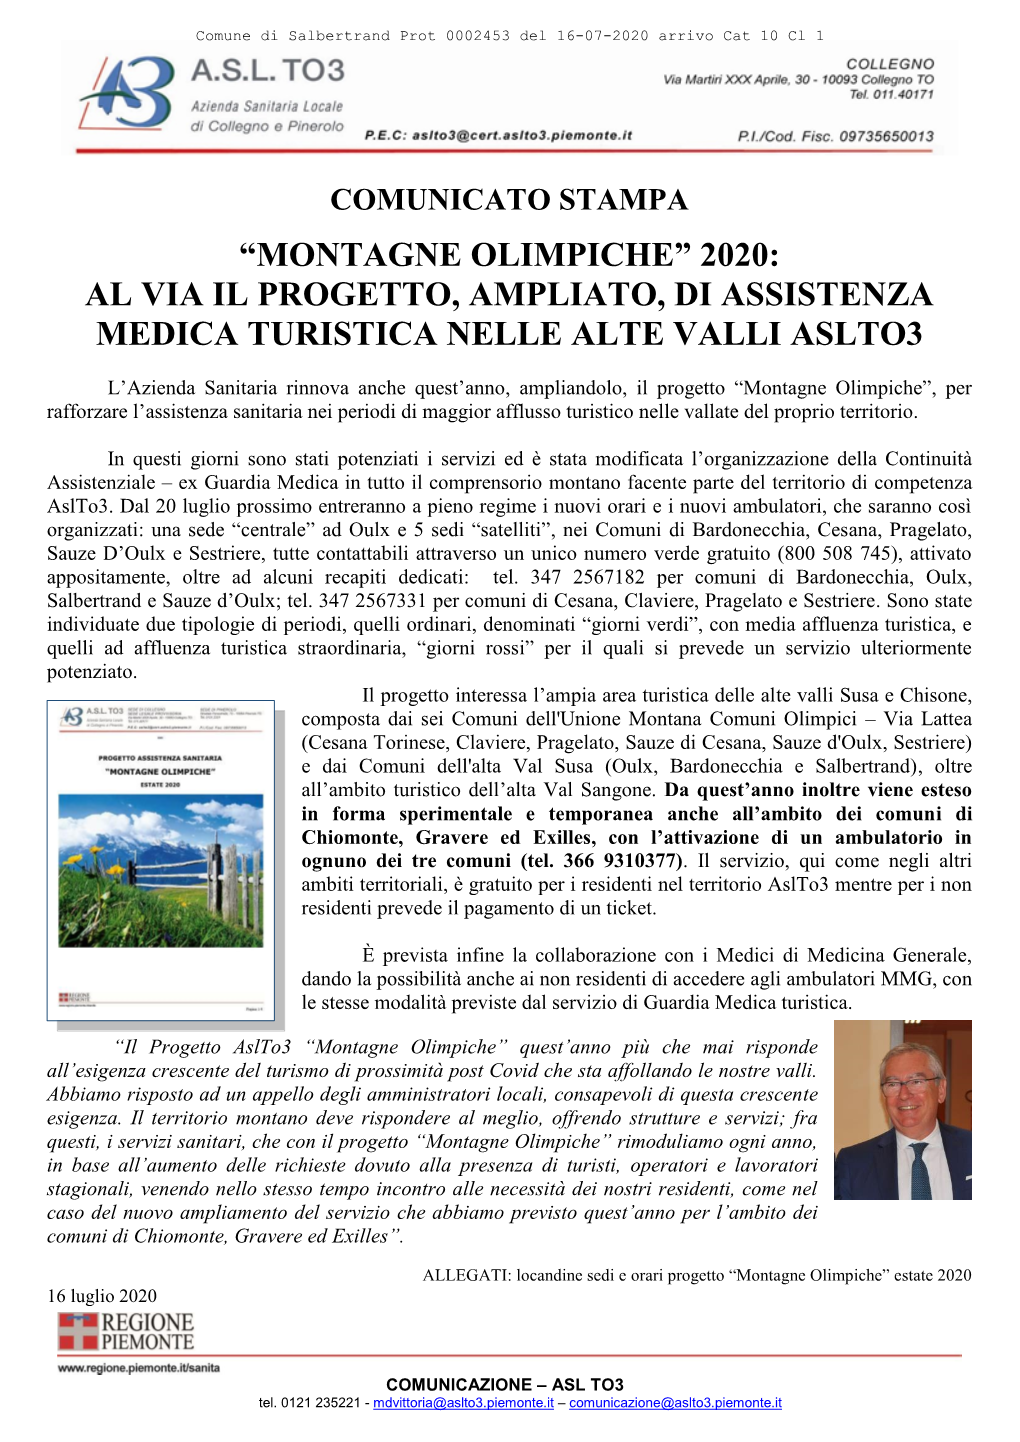 Montagne Olimpiche” 2020: Al Via Il Progetto, Ampliato, Di Assistenza Medica Turistica Nelle Alte Valli Aslto3